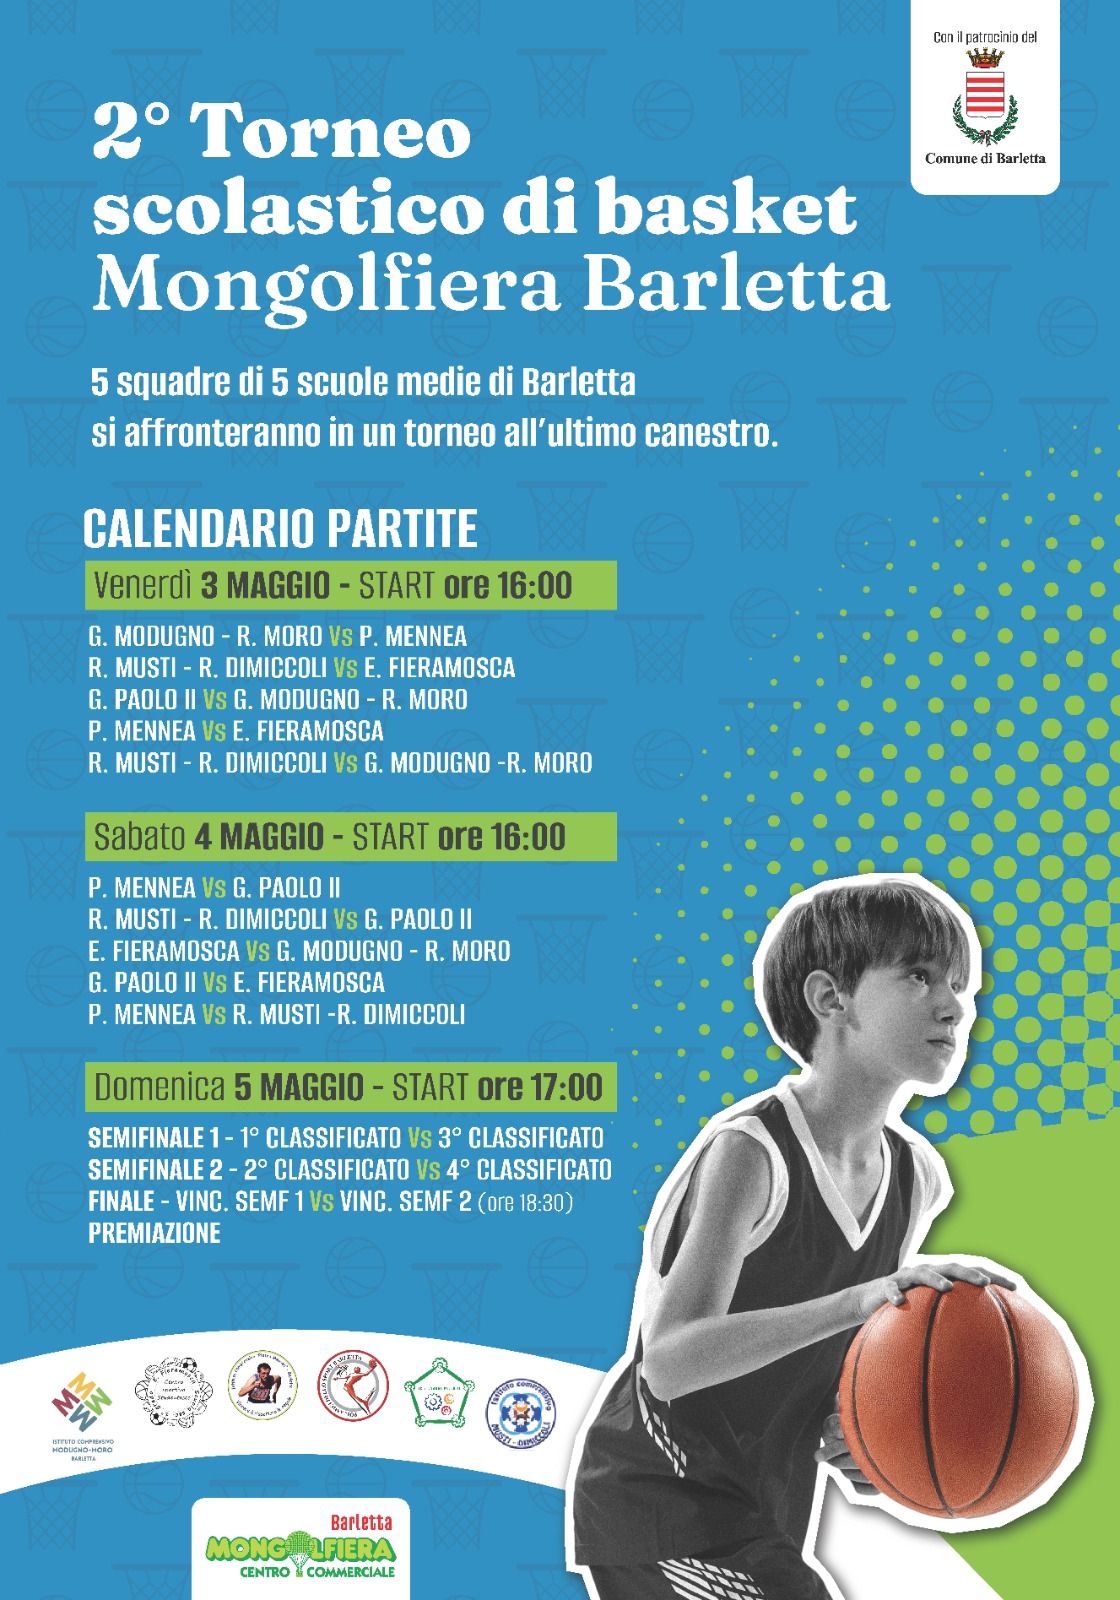 2° Torneo scolastico di basket Mongolfiera Barletta